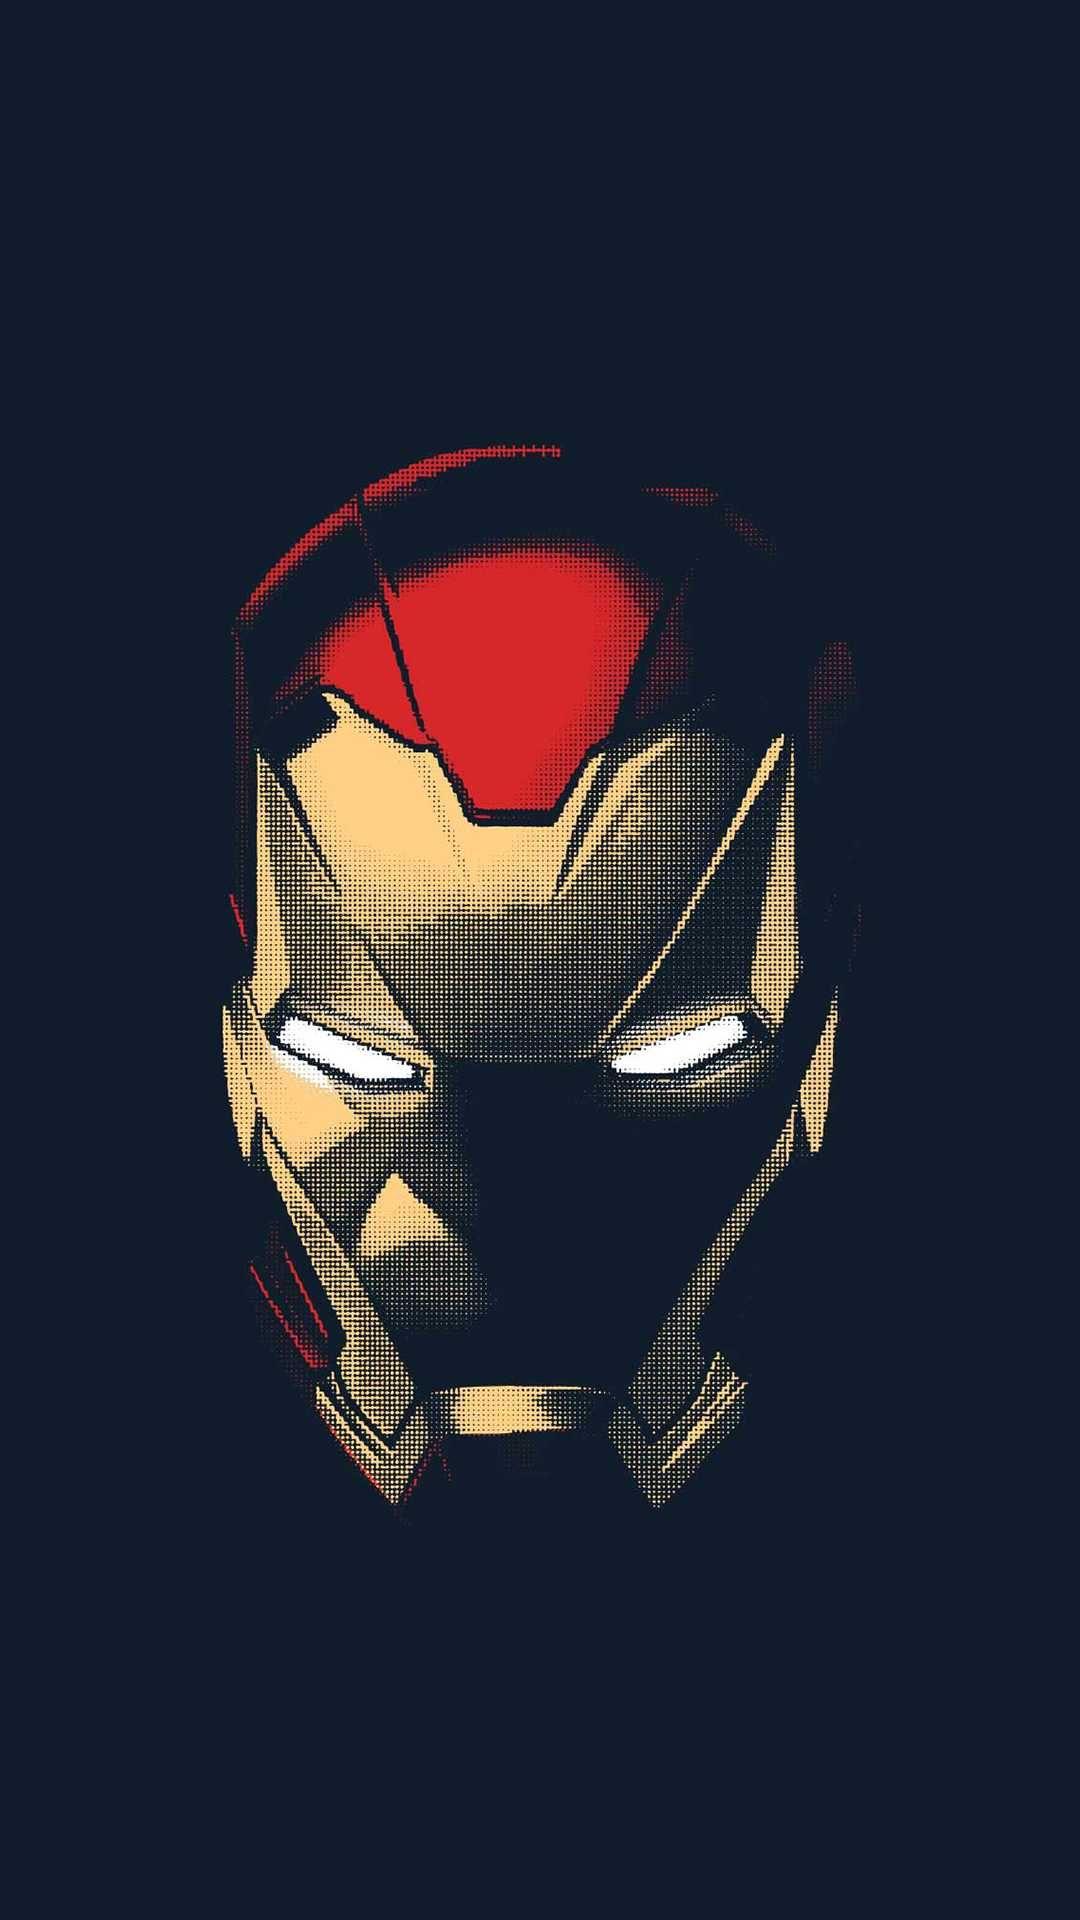 Iron Man Helmet Art iPhone Wallpaper. iPhone Wallpaper. Iron man